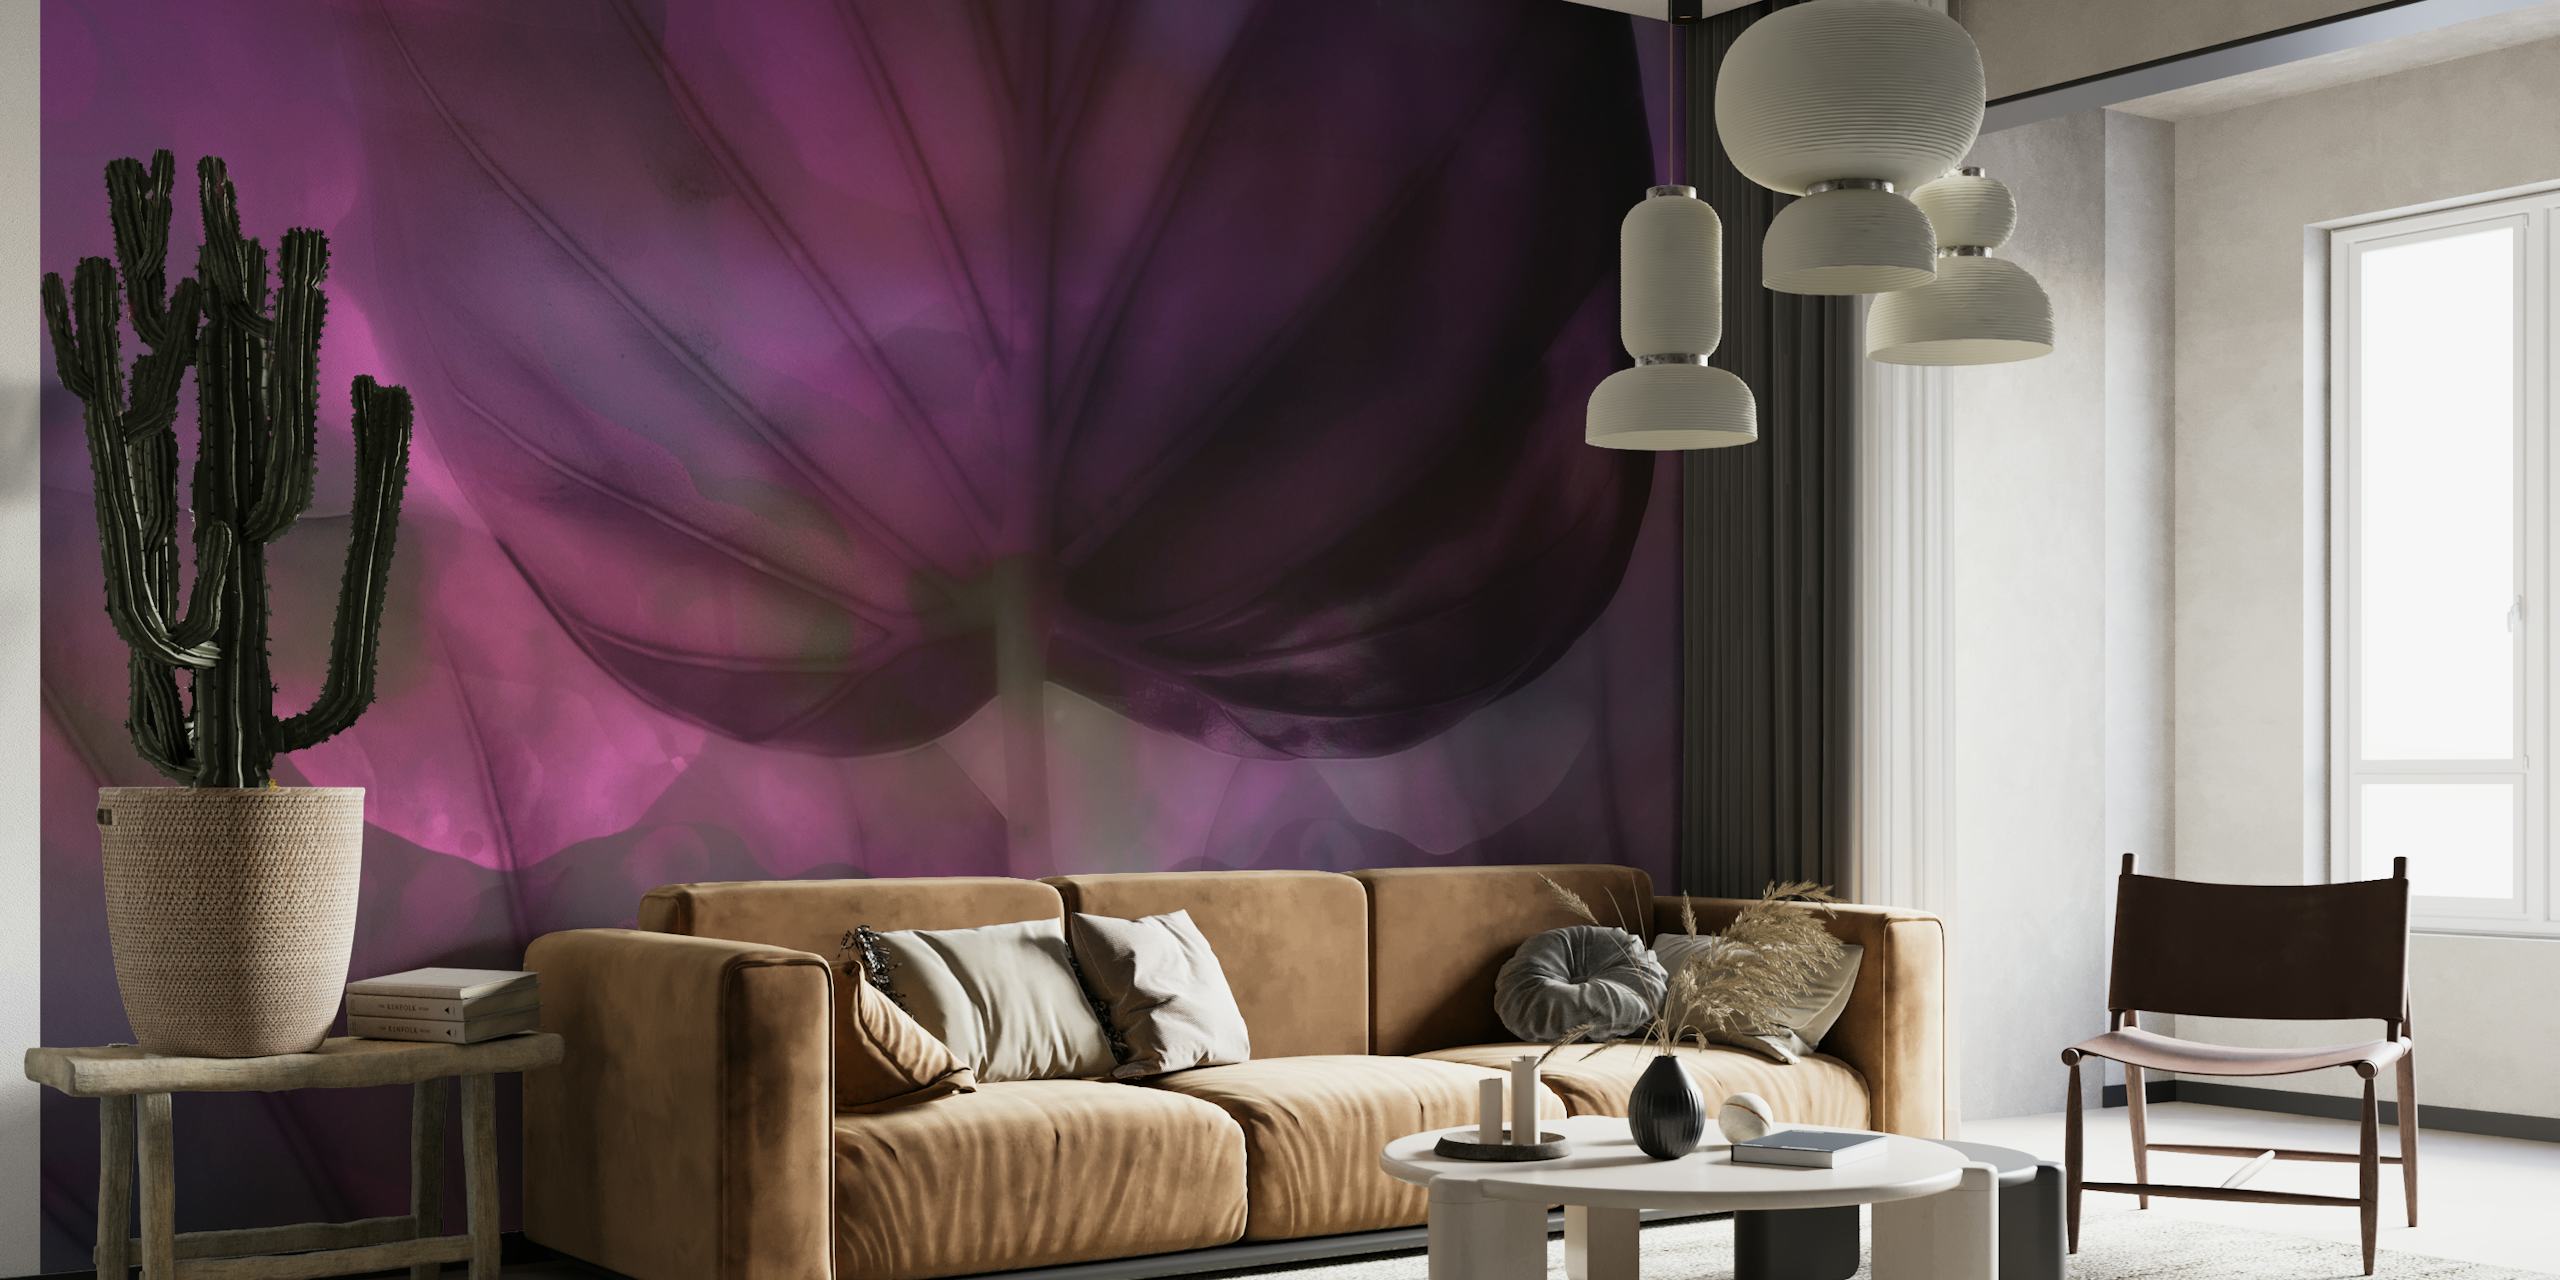 Moody Leaf Abstract Květinová nástěnná malba zobrazující směs tmavě fialových a šedých odstínů v tekutém uměleckém stylu